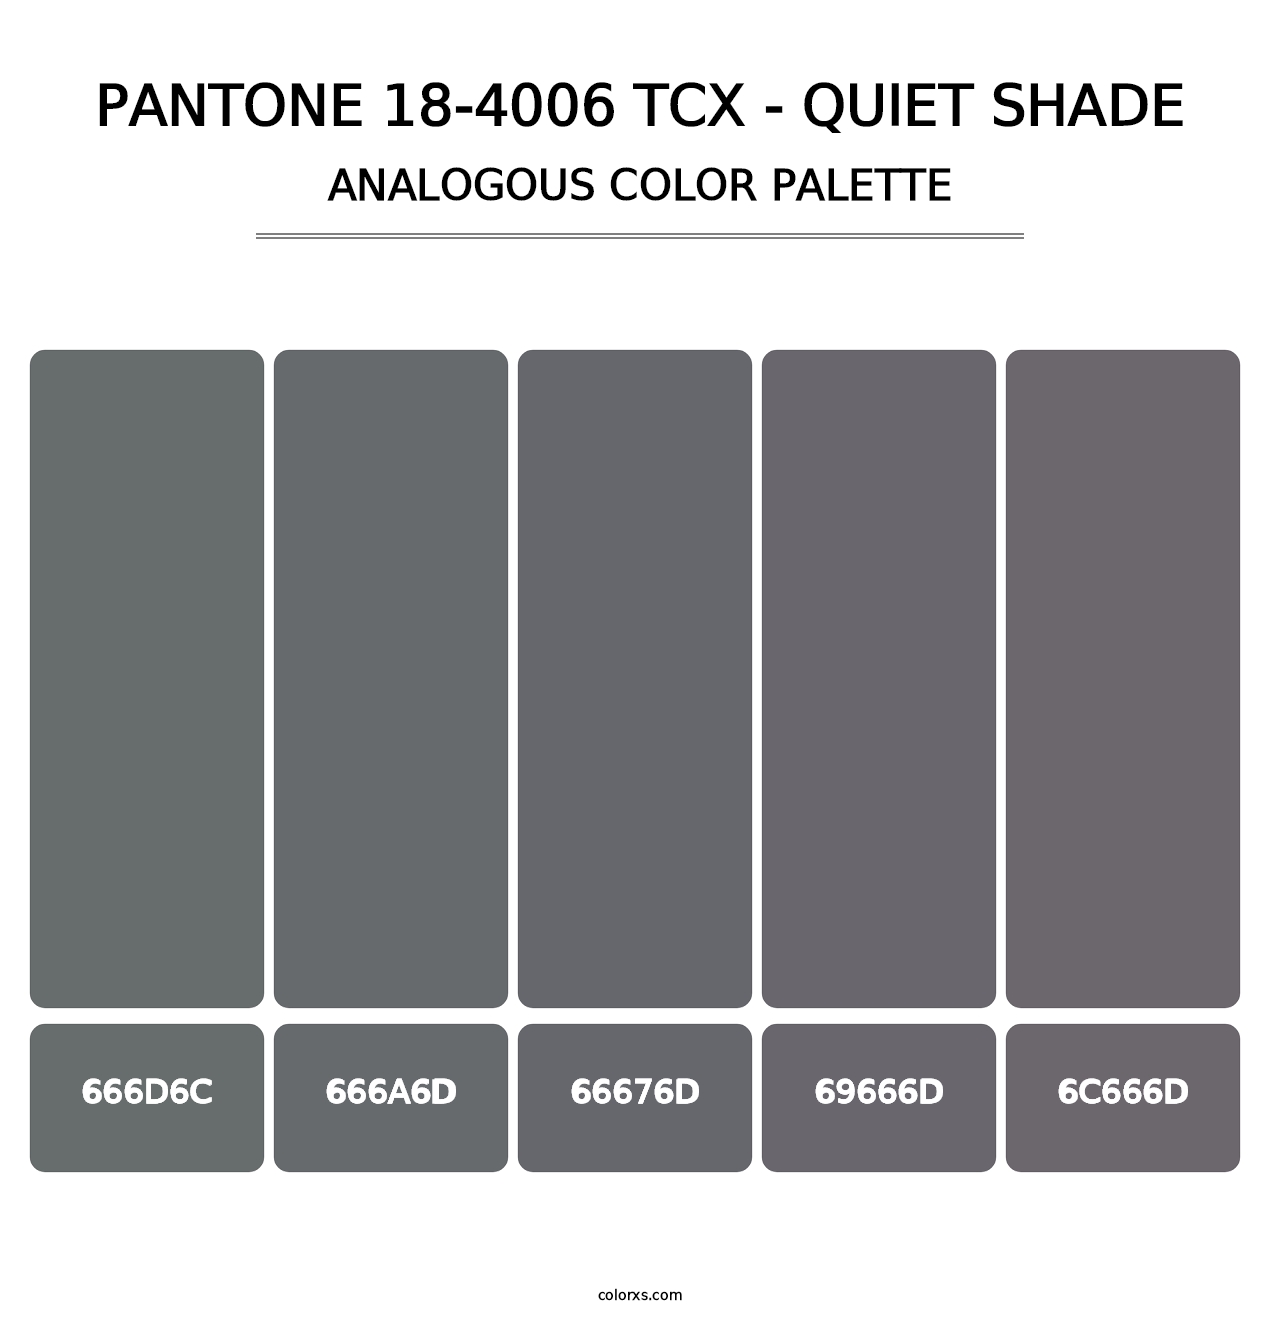 PANTONE 18-4006 TCX - Quiet Shade - Analogous Color Palette